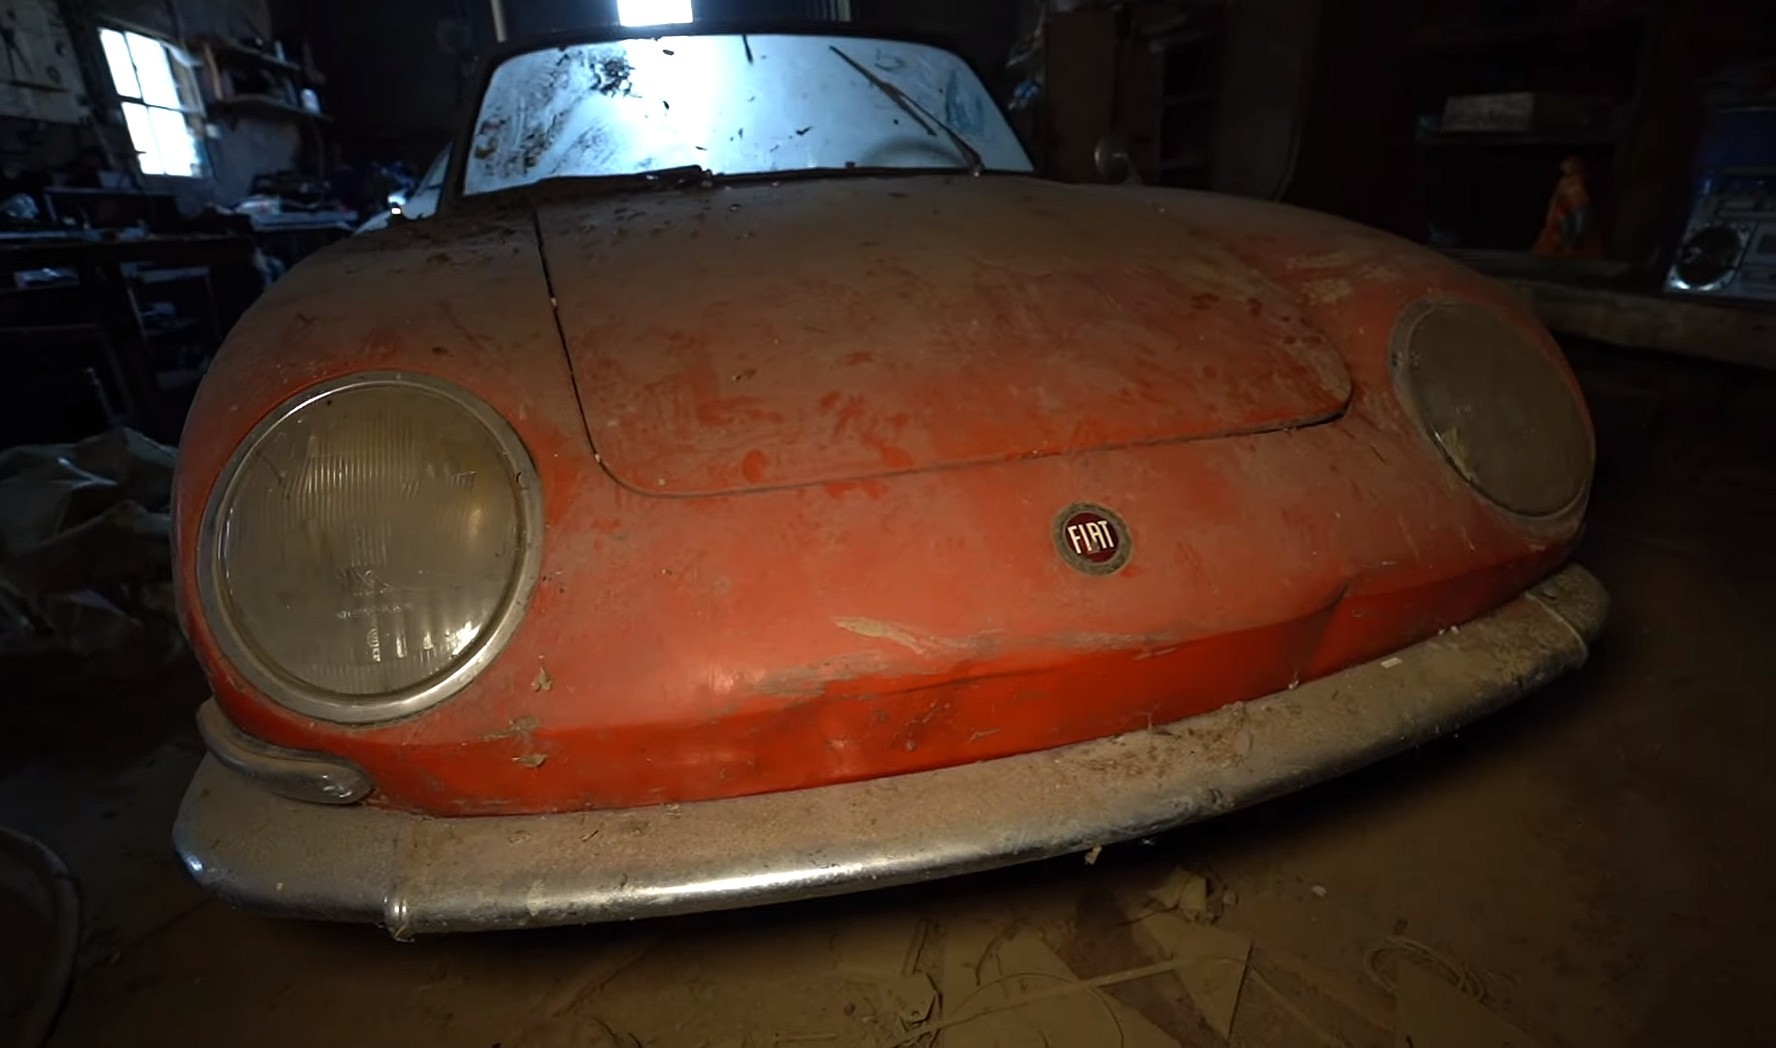 Video: Forgotten Fiat 850 Spider Found in an Abandoned Mansion’s Garage